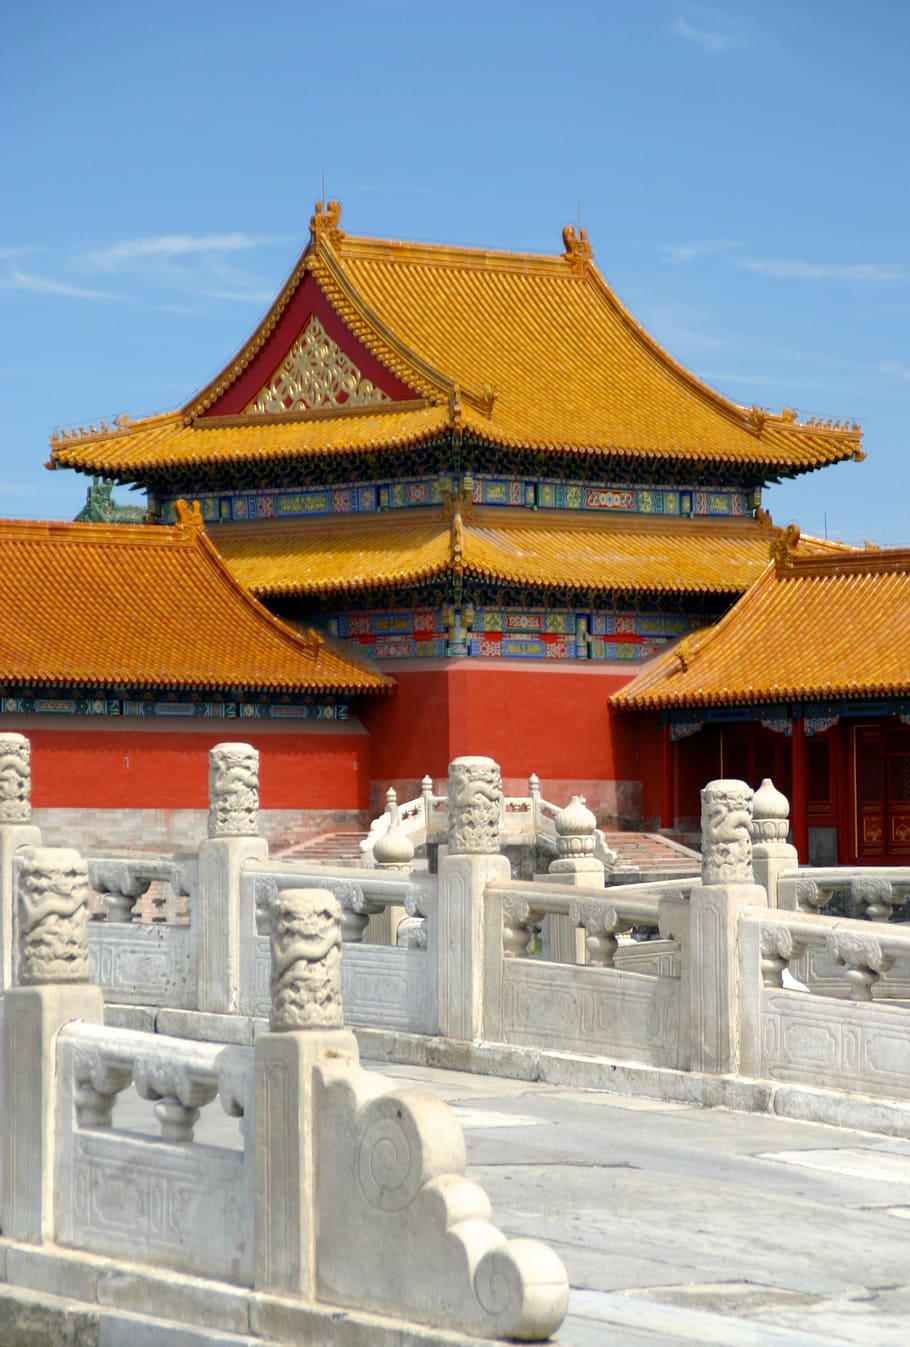 telhado, china, dragão, cidade proibida, arquitetura, beijing, palácio, ornamento, estrutura construída, exterior do edifício